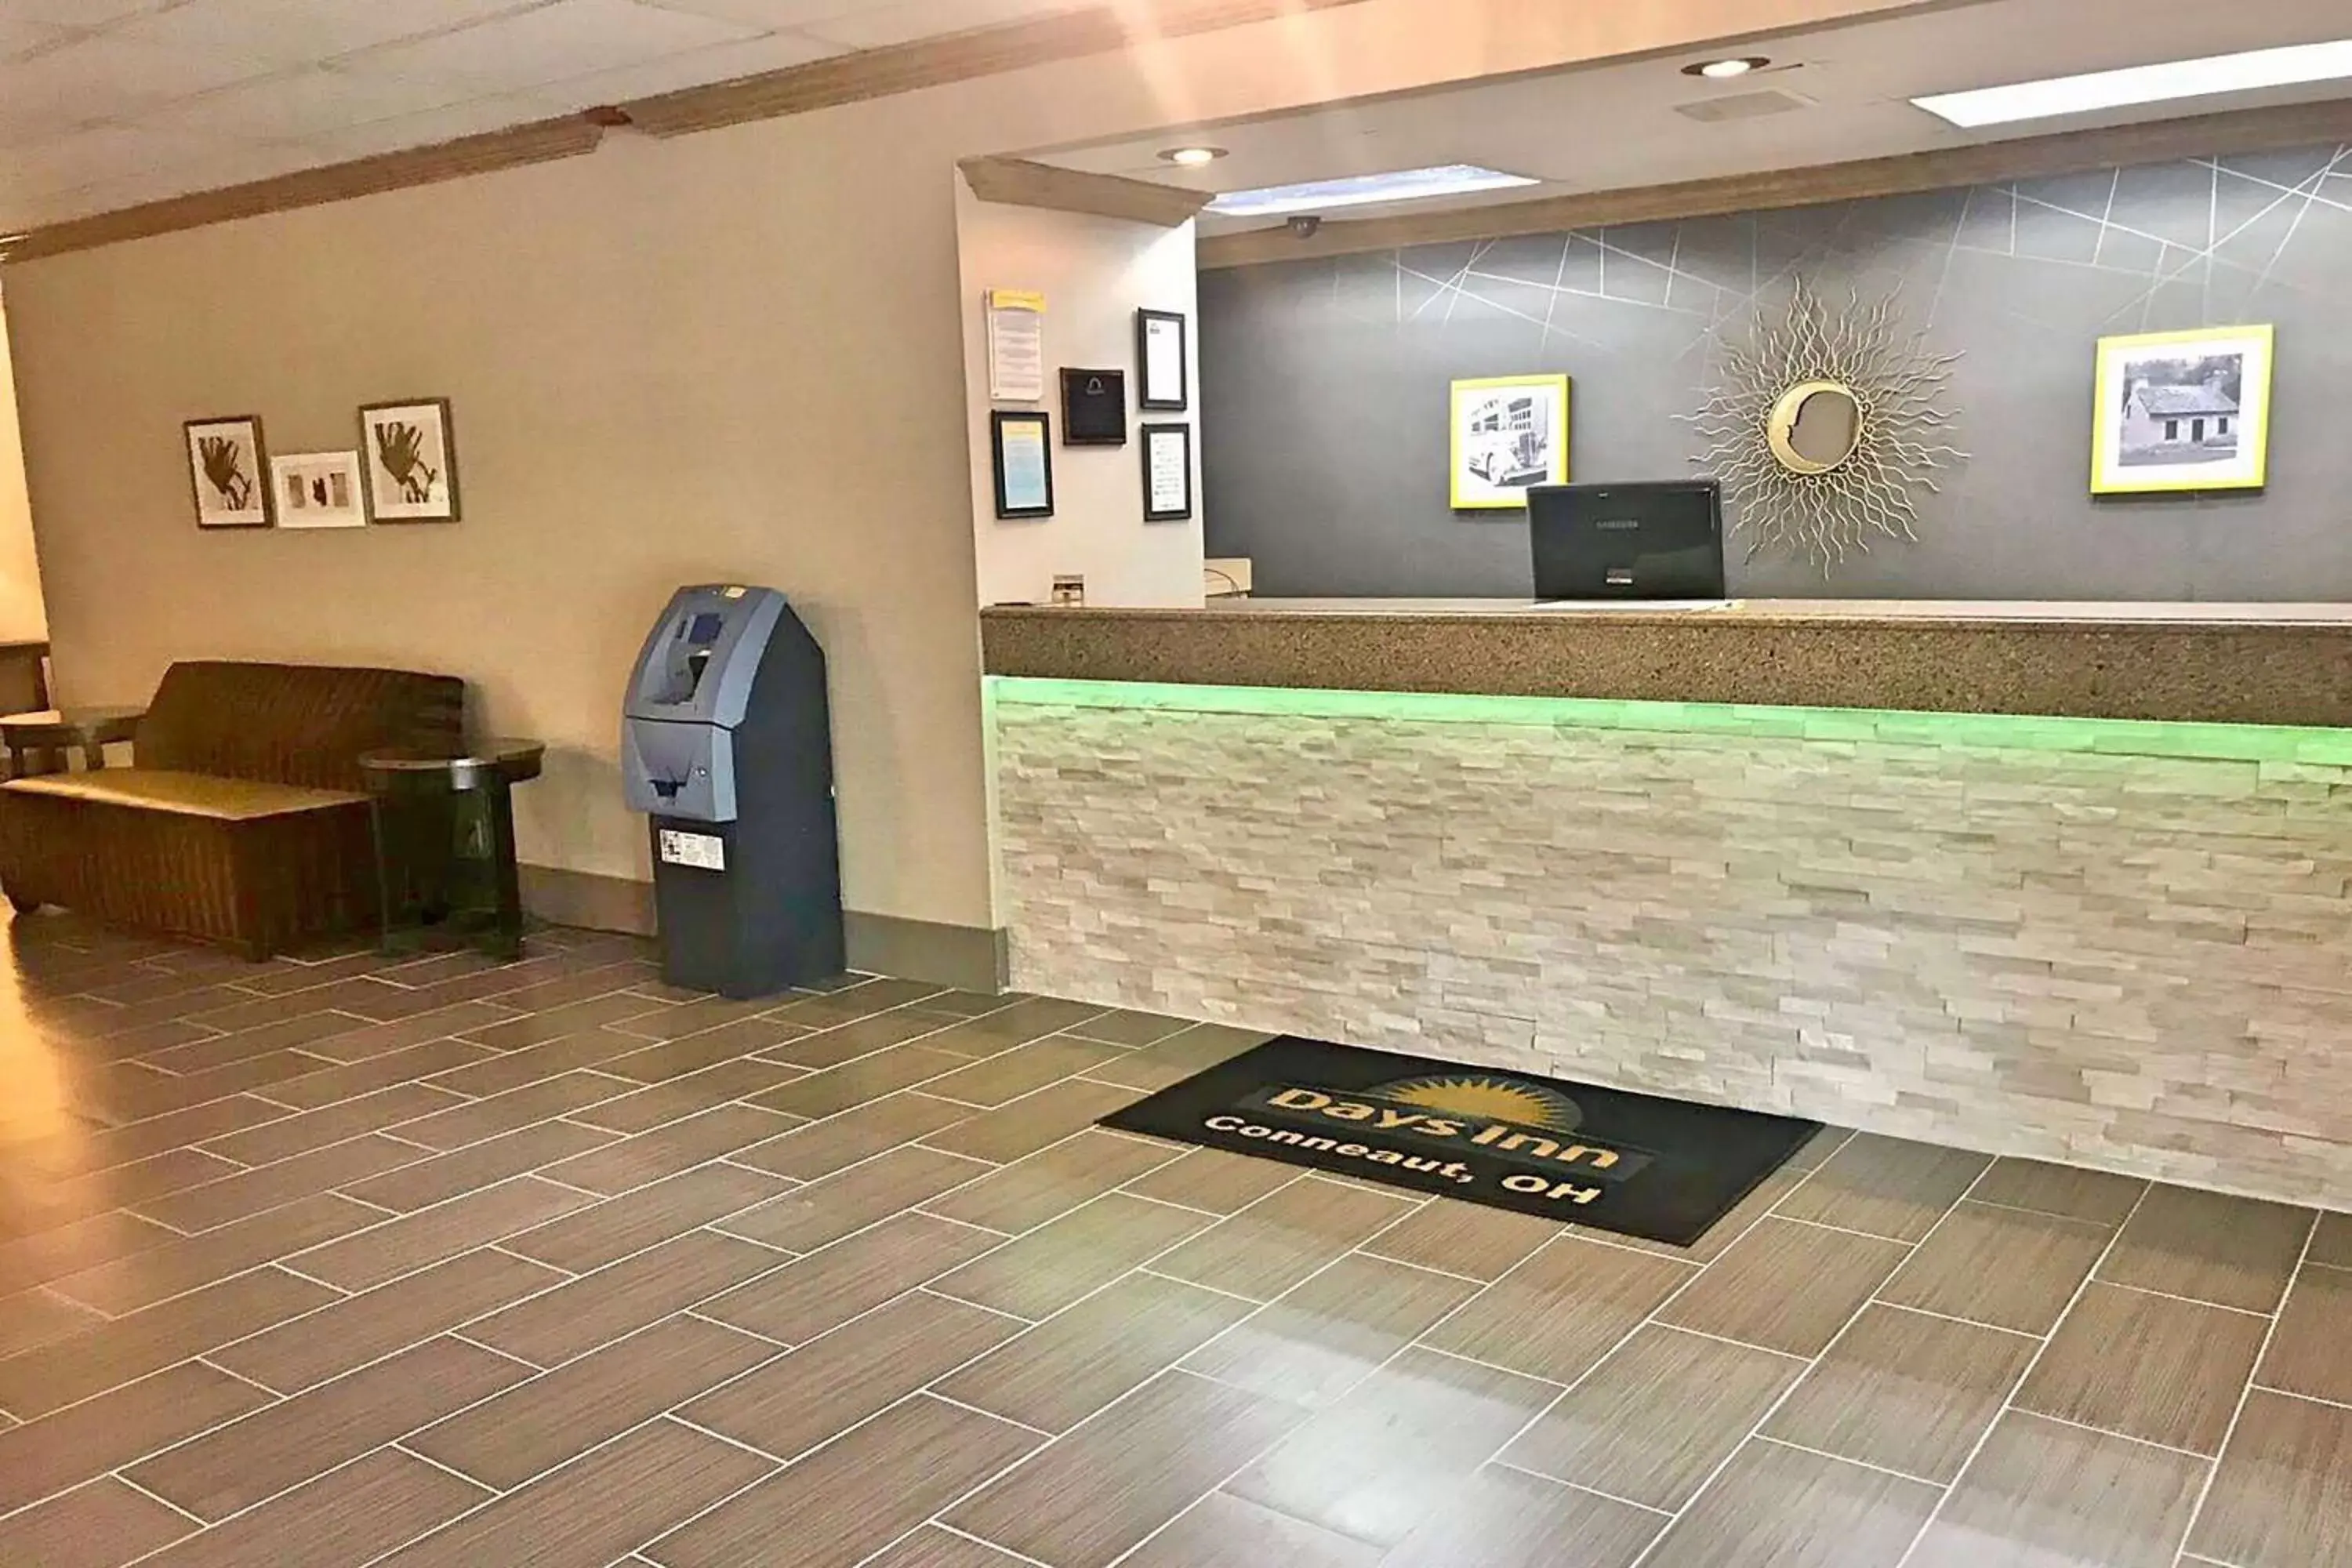 Lobby or reception, Lobby/Reception in Days Inn by Wyndham Conneaut